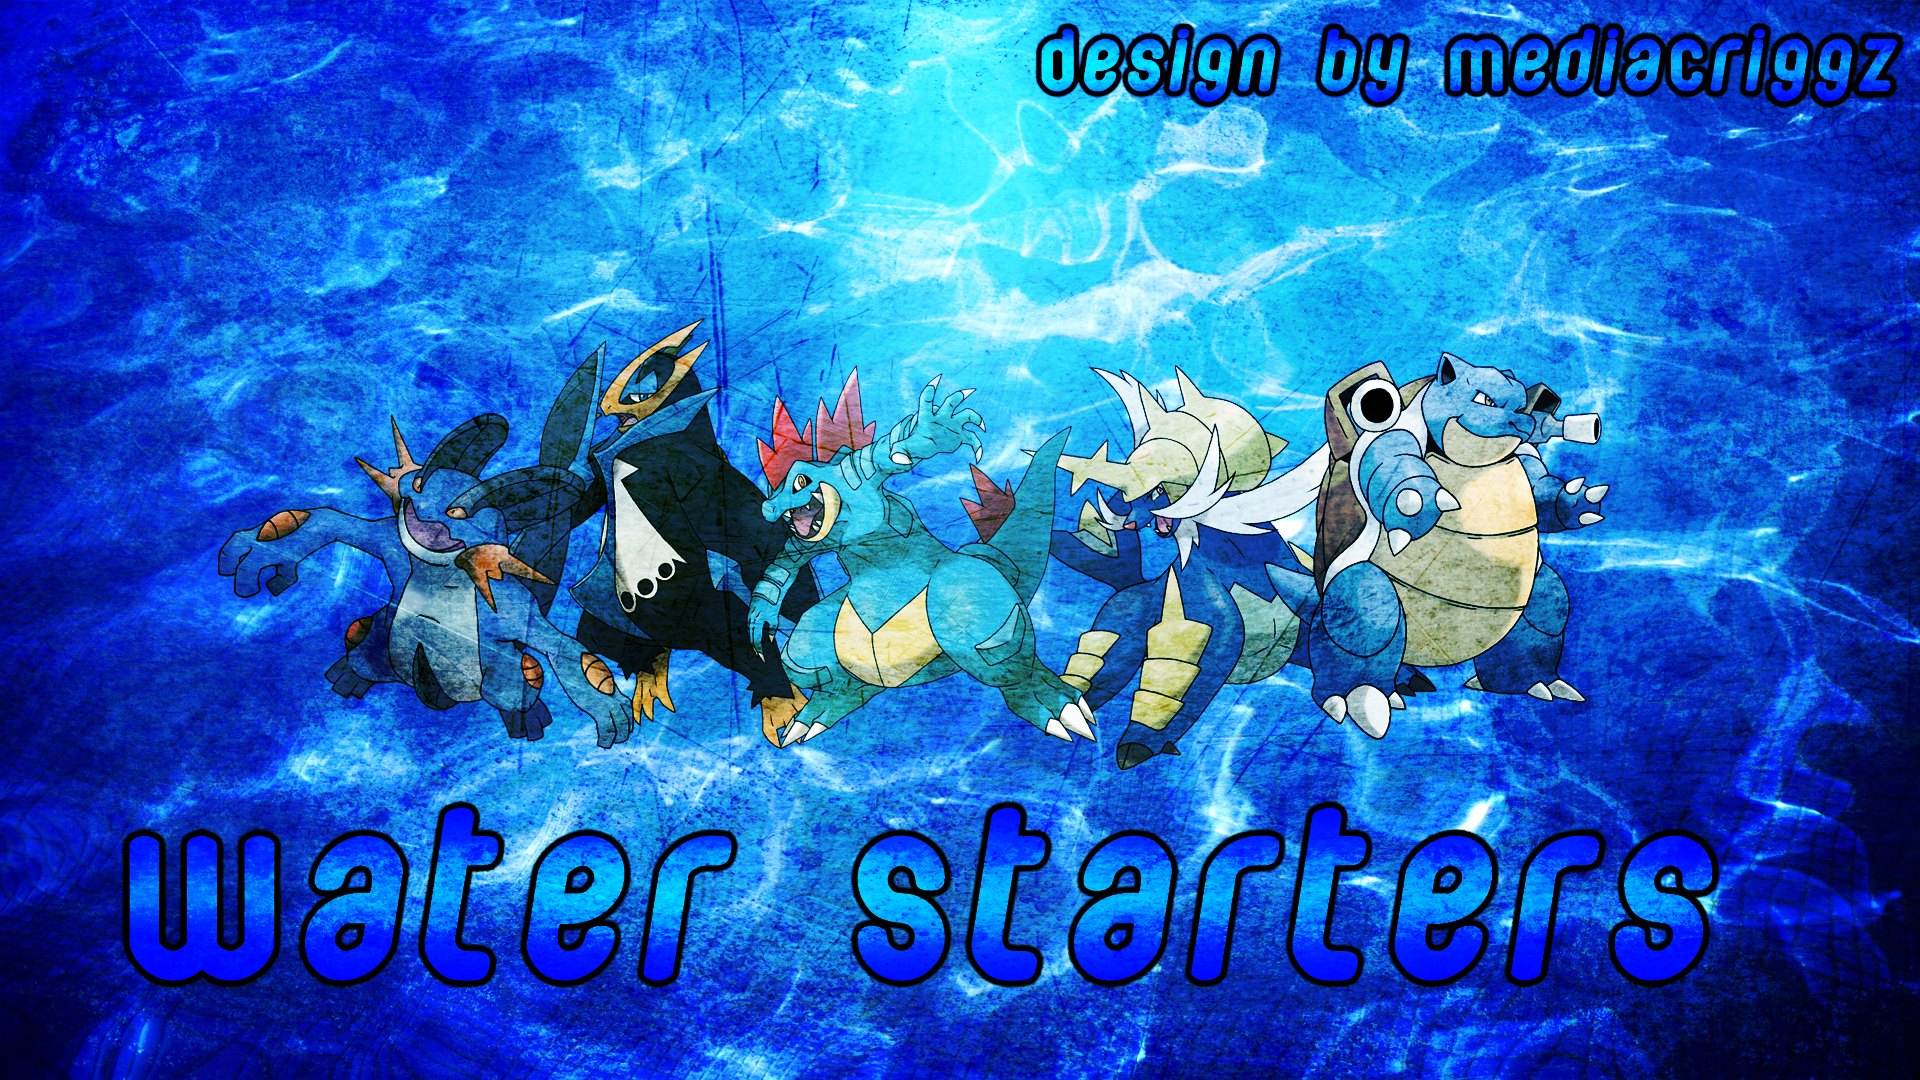 Pokemon Water Starters Wallpaper By Mediacriggz